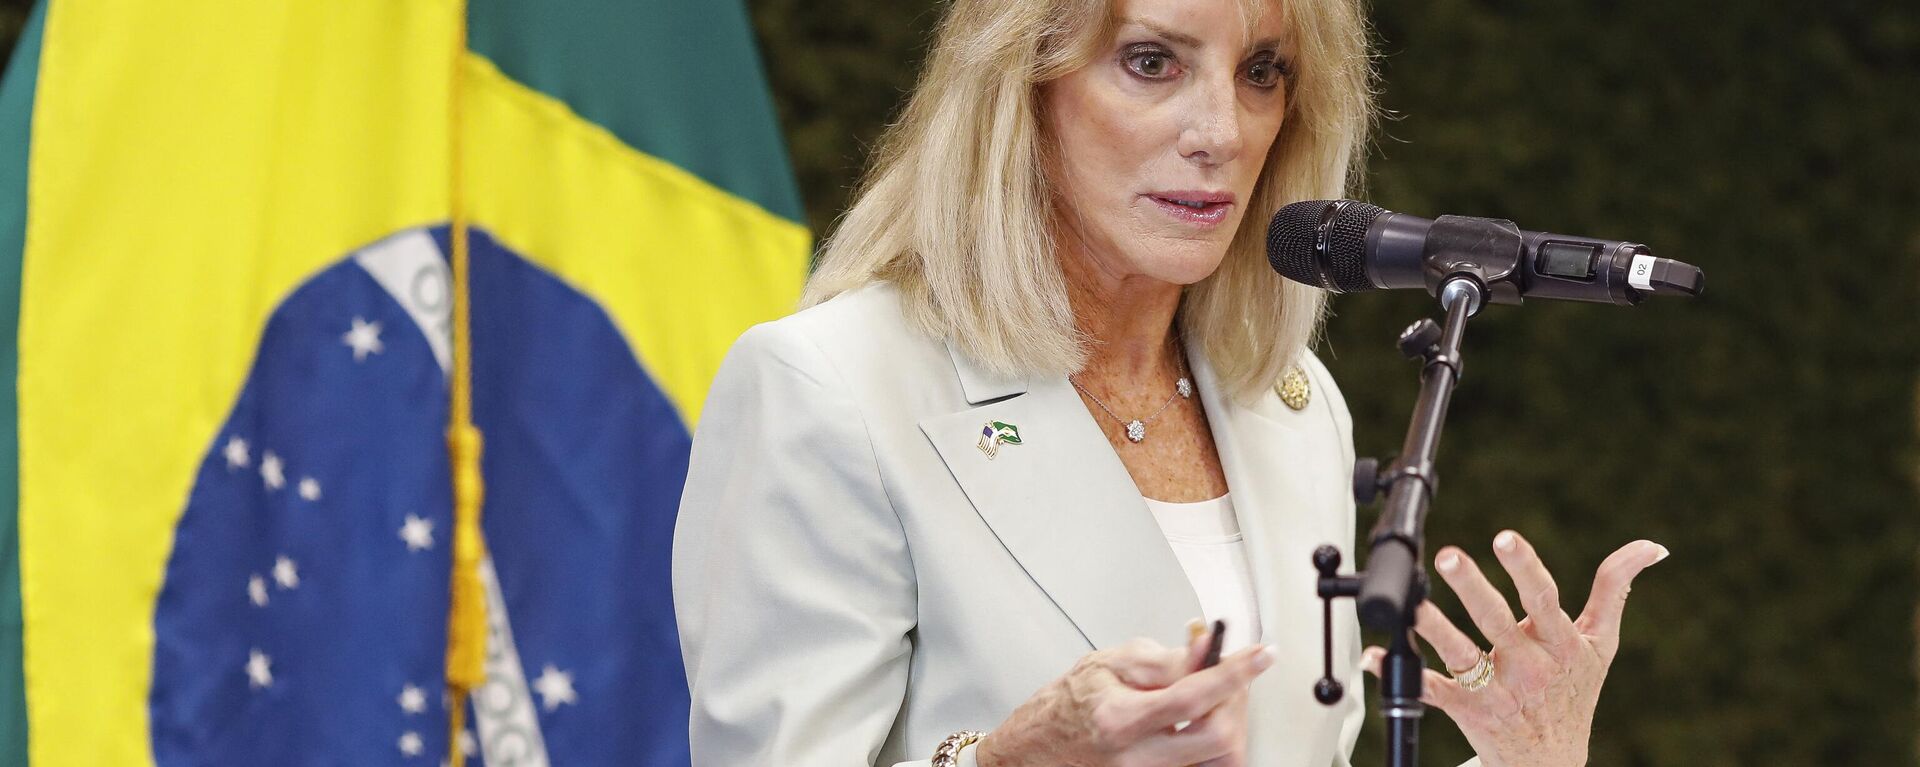 Embaixadora dos EUA no Brasil, Elizabeth Frawley Bagley, fala durante coletiva de imprensa na Embaixada dos EUA em Brasília, em 15 de fevereiro de 2023 - Sputnik Brasil, 1920, 15.02.2023